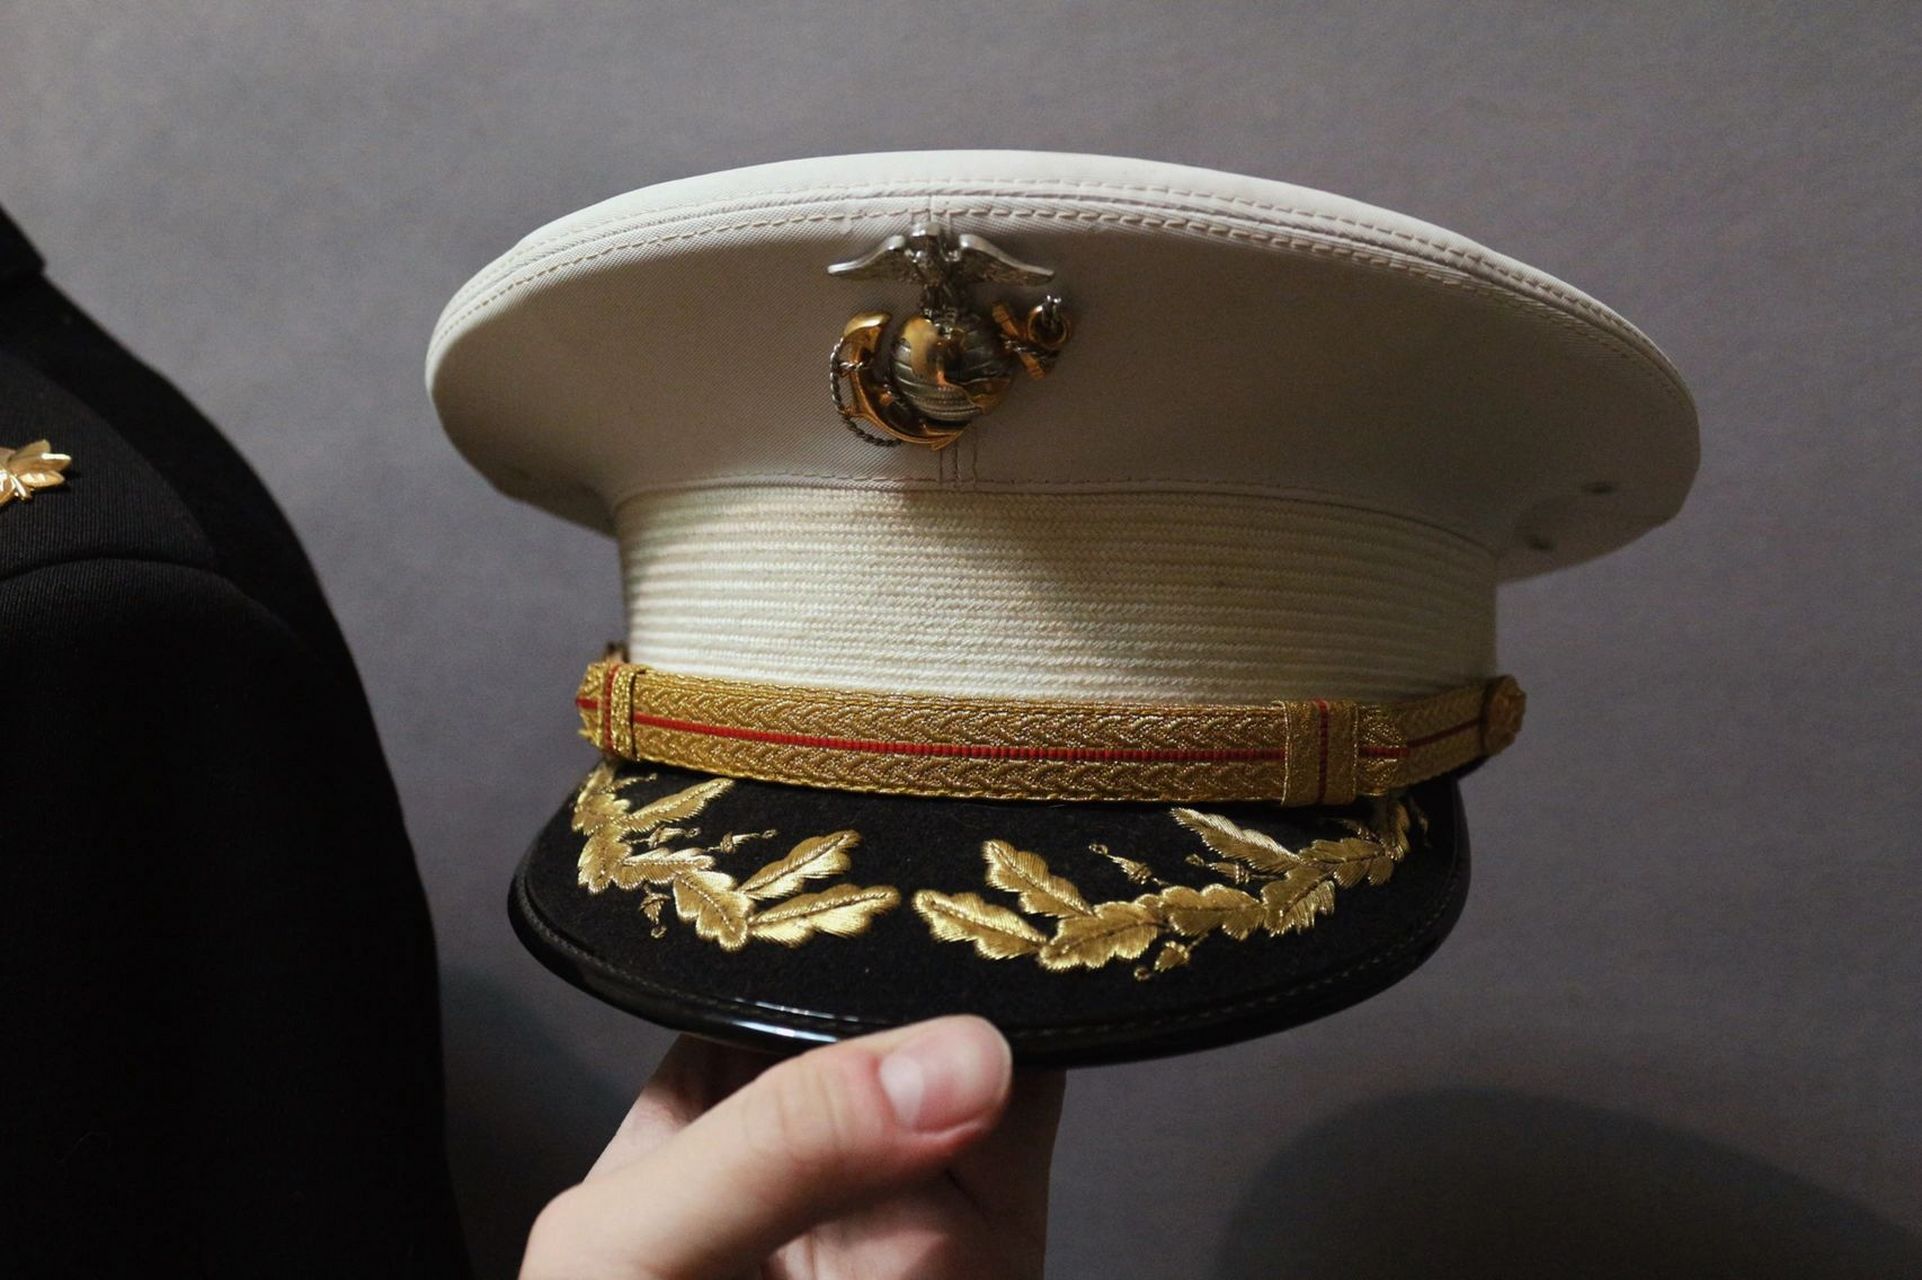 海军礼服军官图片